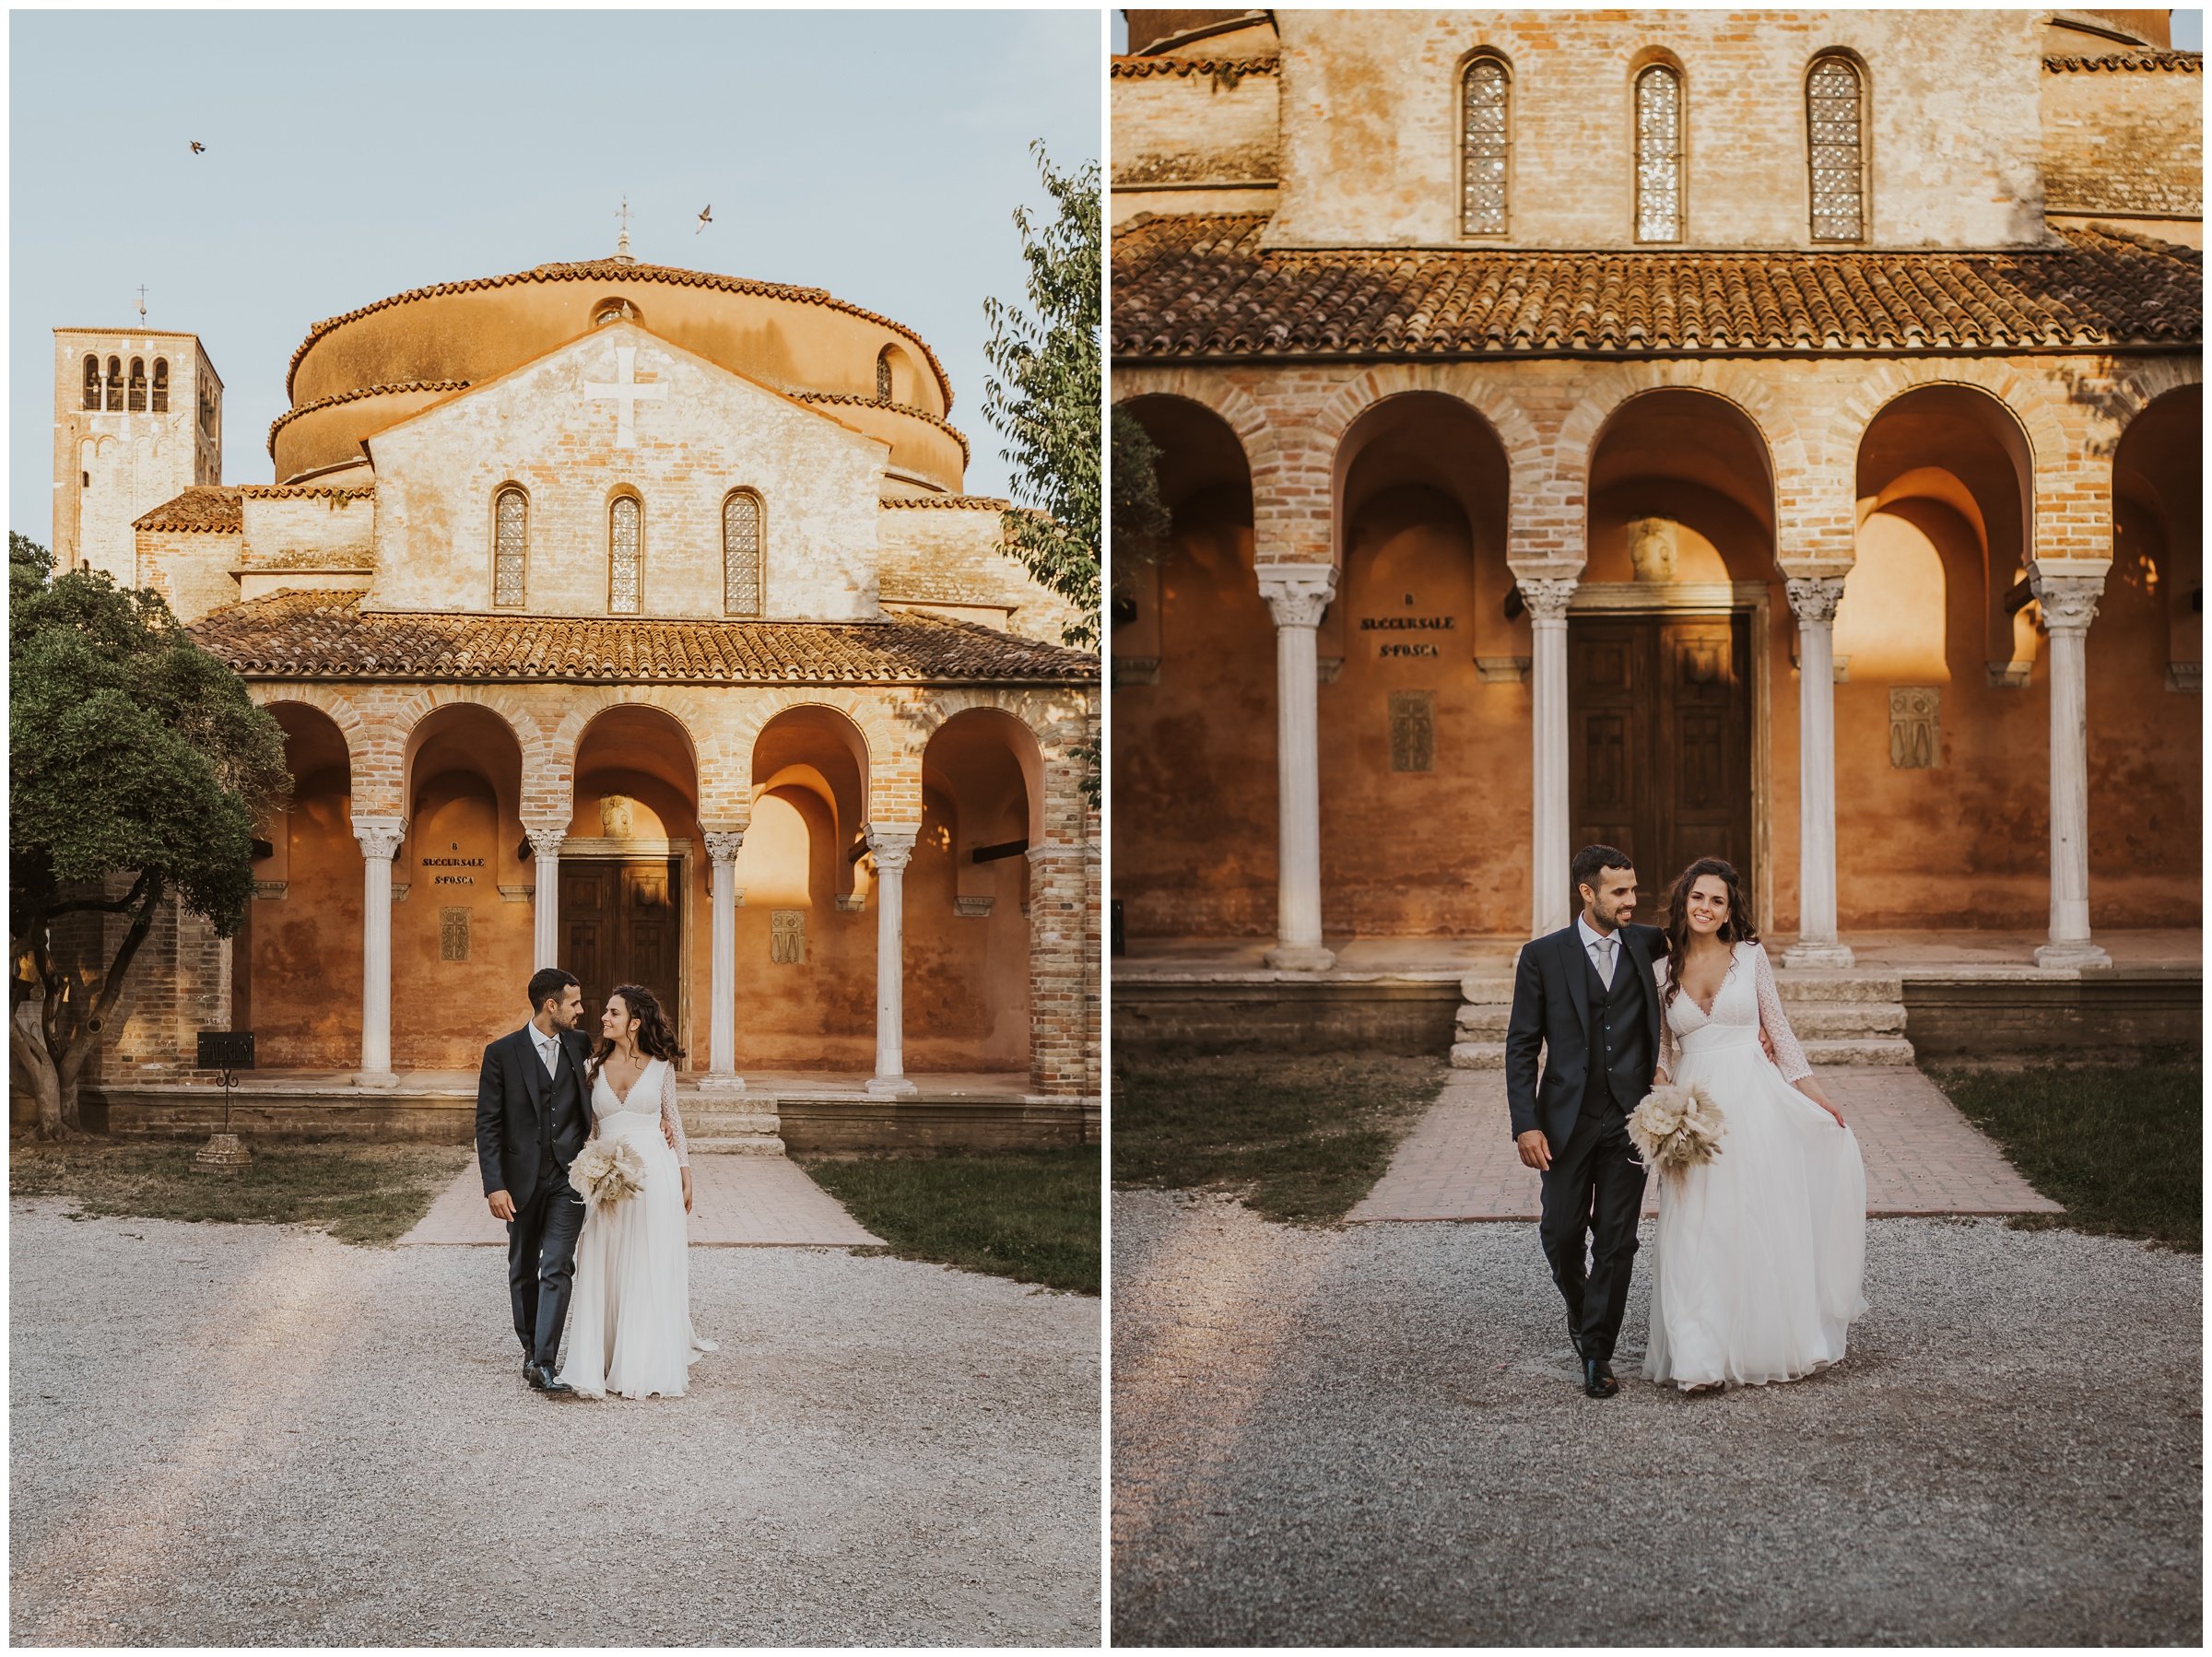 Matrimonio-locanda-cipriani-torcello-fotografo-matrimonio-treviso-fotografo-matrimonio-venezia_0076.jpg